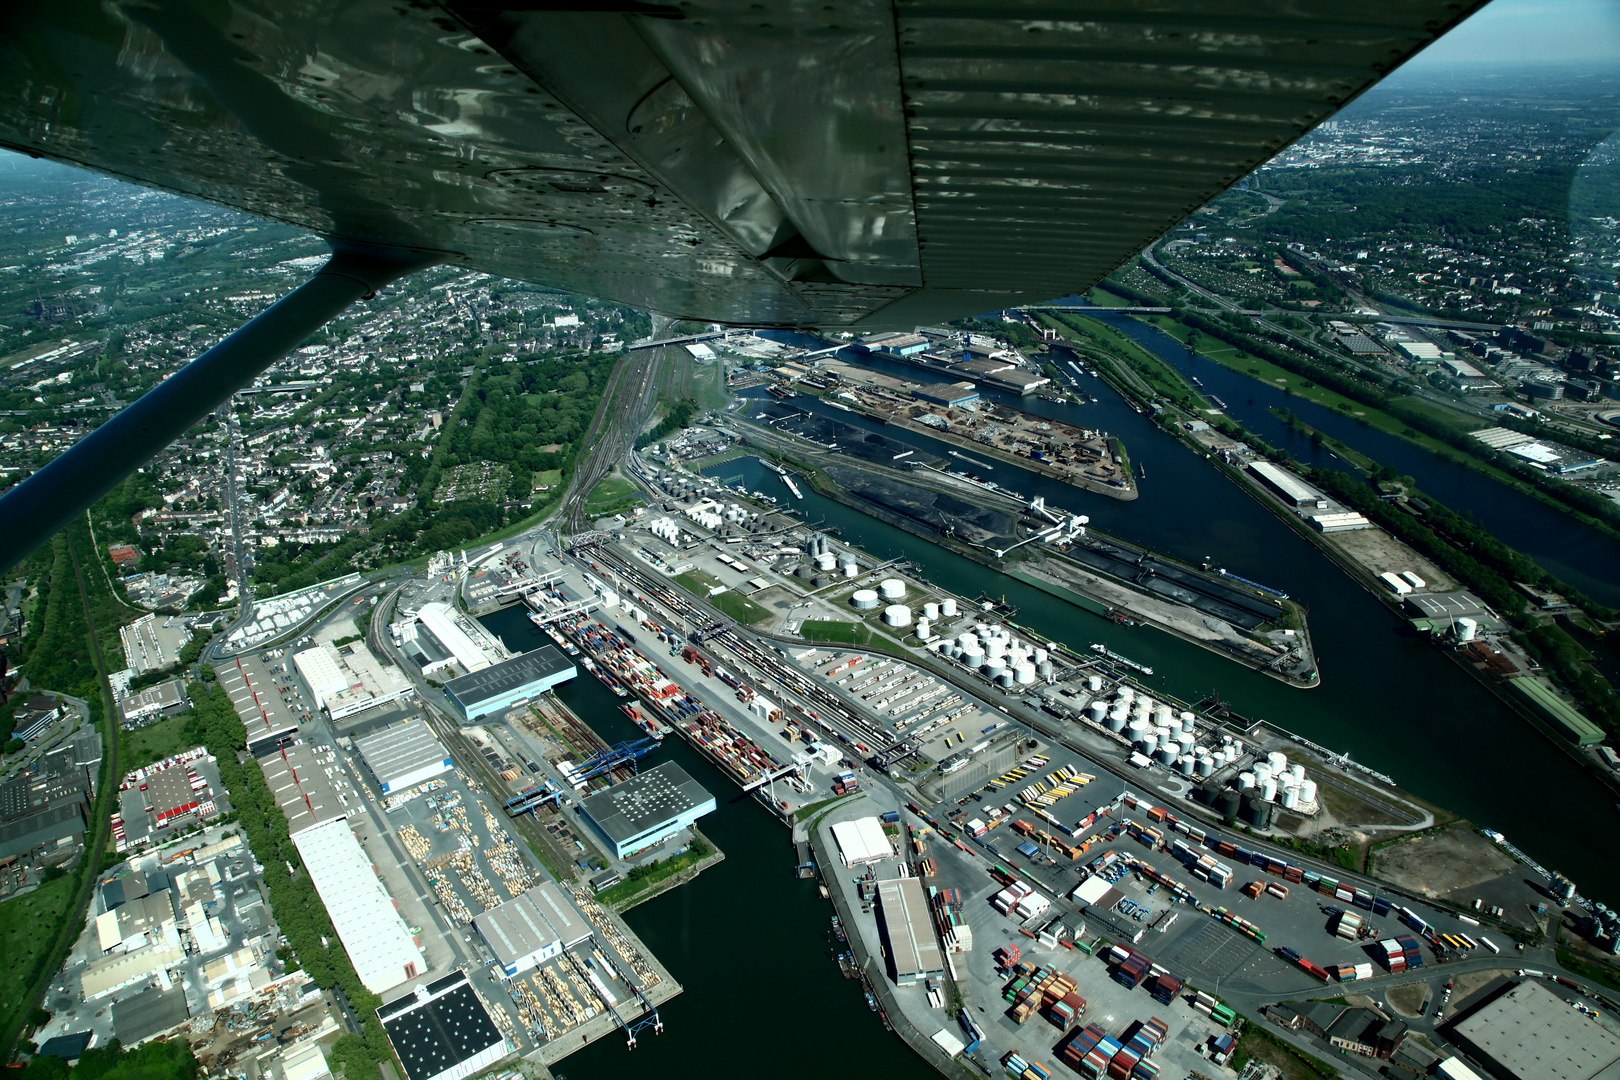 Duisburg Hafen